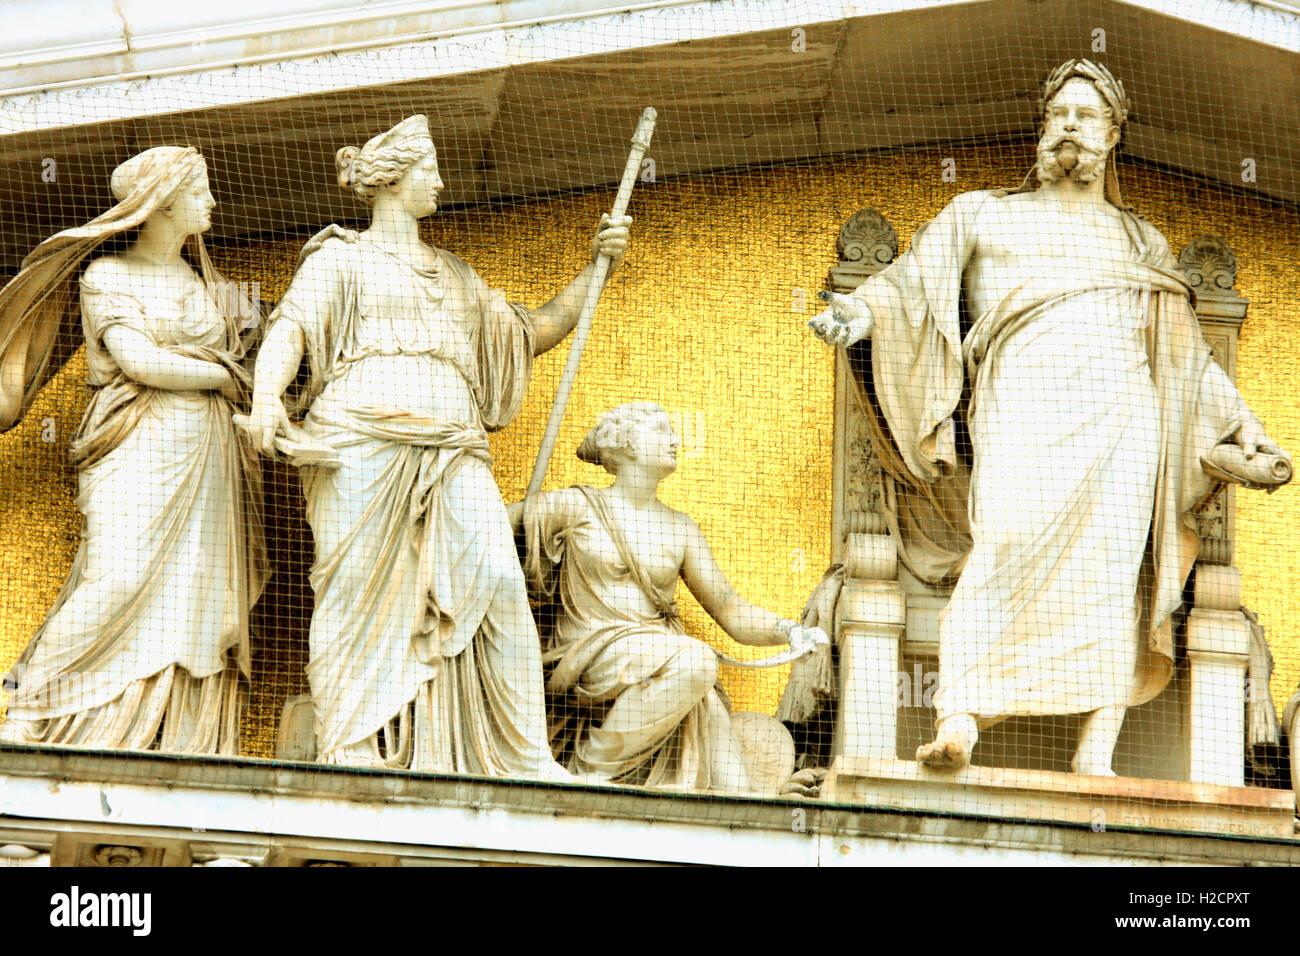 das Parlament in Wien, Österreich. mit der Statue der "Pallas Athene" die griechische Göttin der Weisheit. Stockfoto